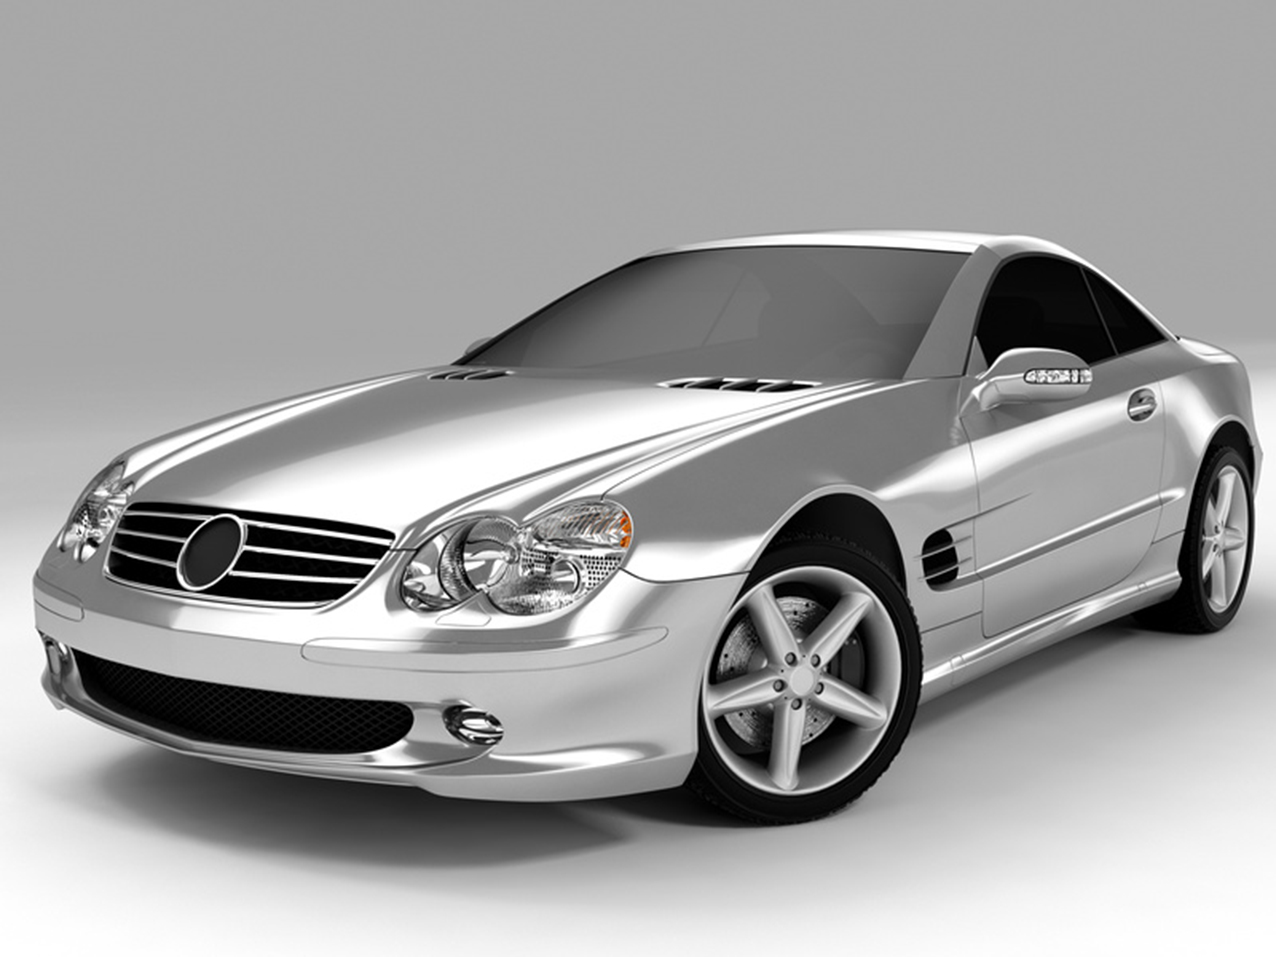 Autofolie-3M Car Wrap-Serie 2080-Chrome Spezial Effekte Folien-Car Wrapping- Folie-statt-Lack-Vollverklebung-Lackfolie-Klebefolie-Schutzfolie-billig-und-gut-kaufen, Shop für alle Werbe Produkte von A - Z